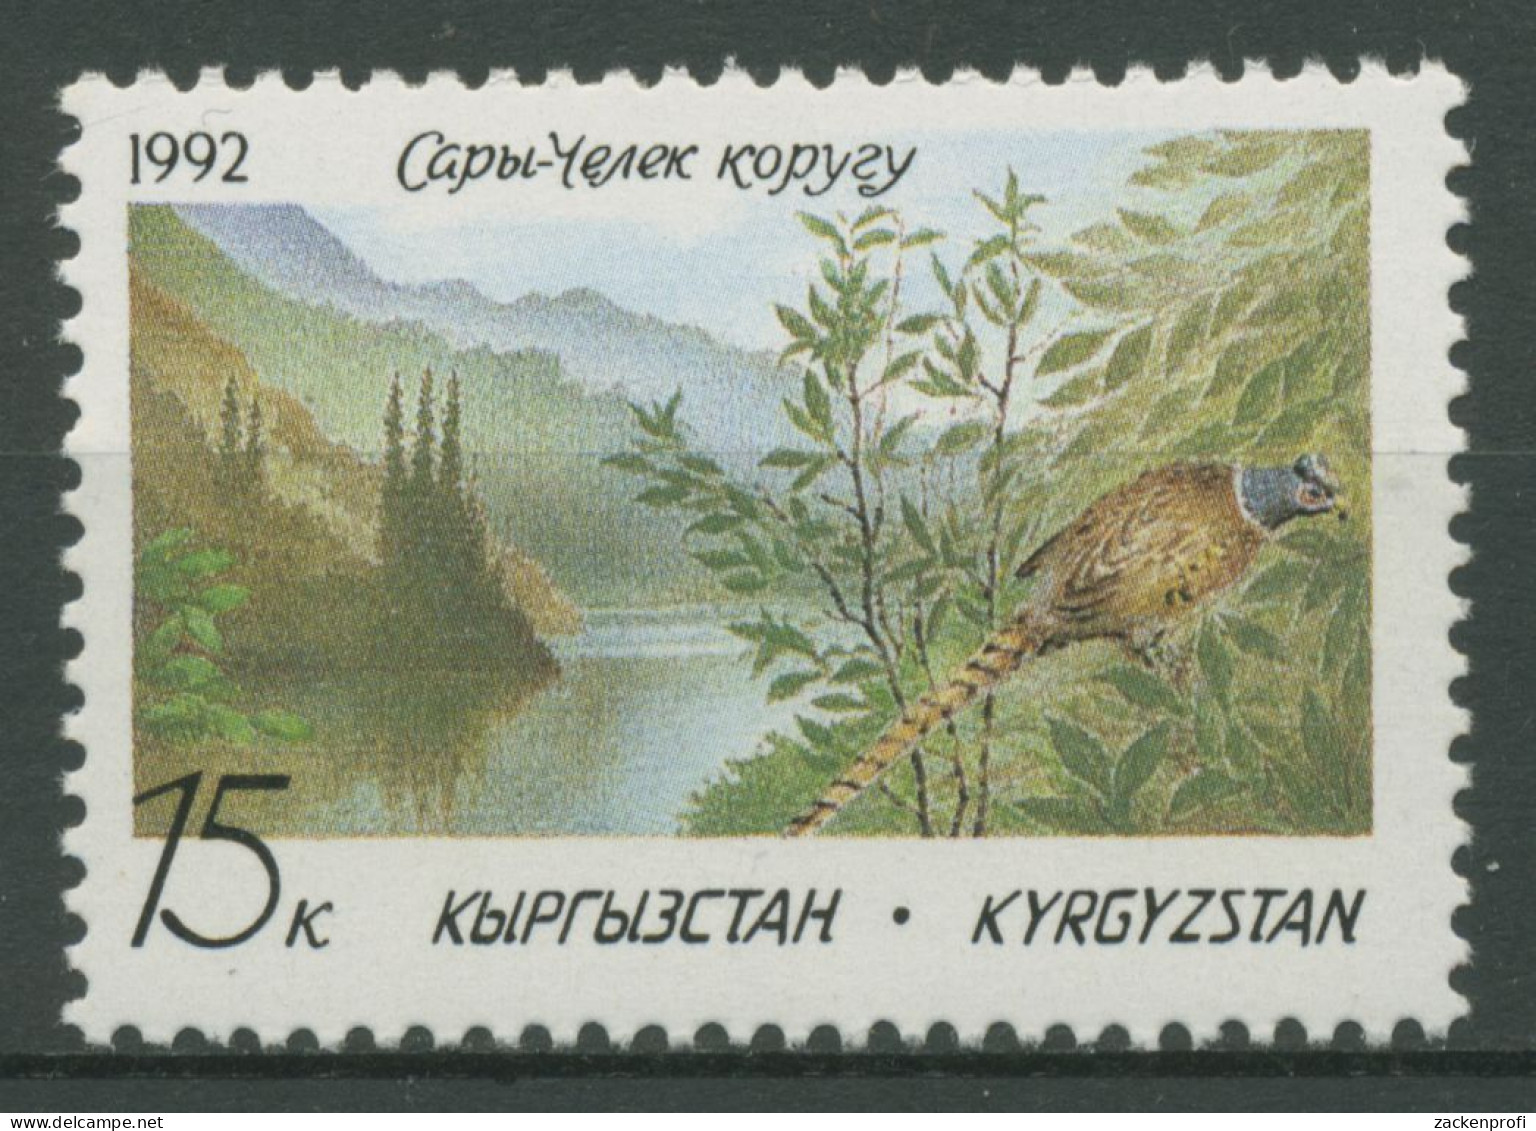 Kirgisien 1992 Naturschutz Tiere Vögel Fasan 1 Postfrisch - Kirghizstan